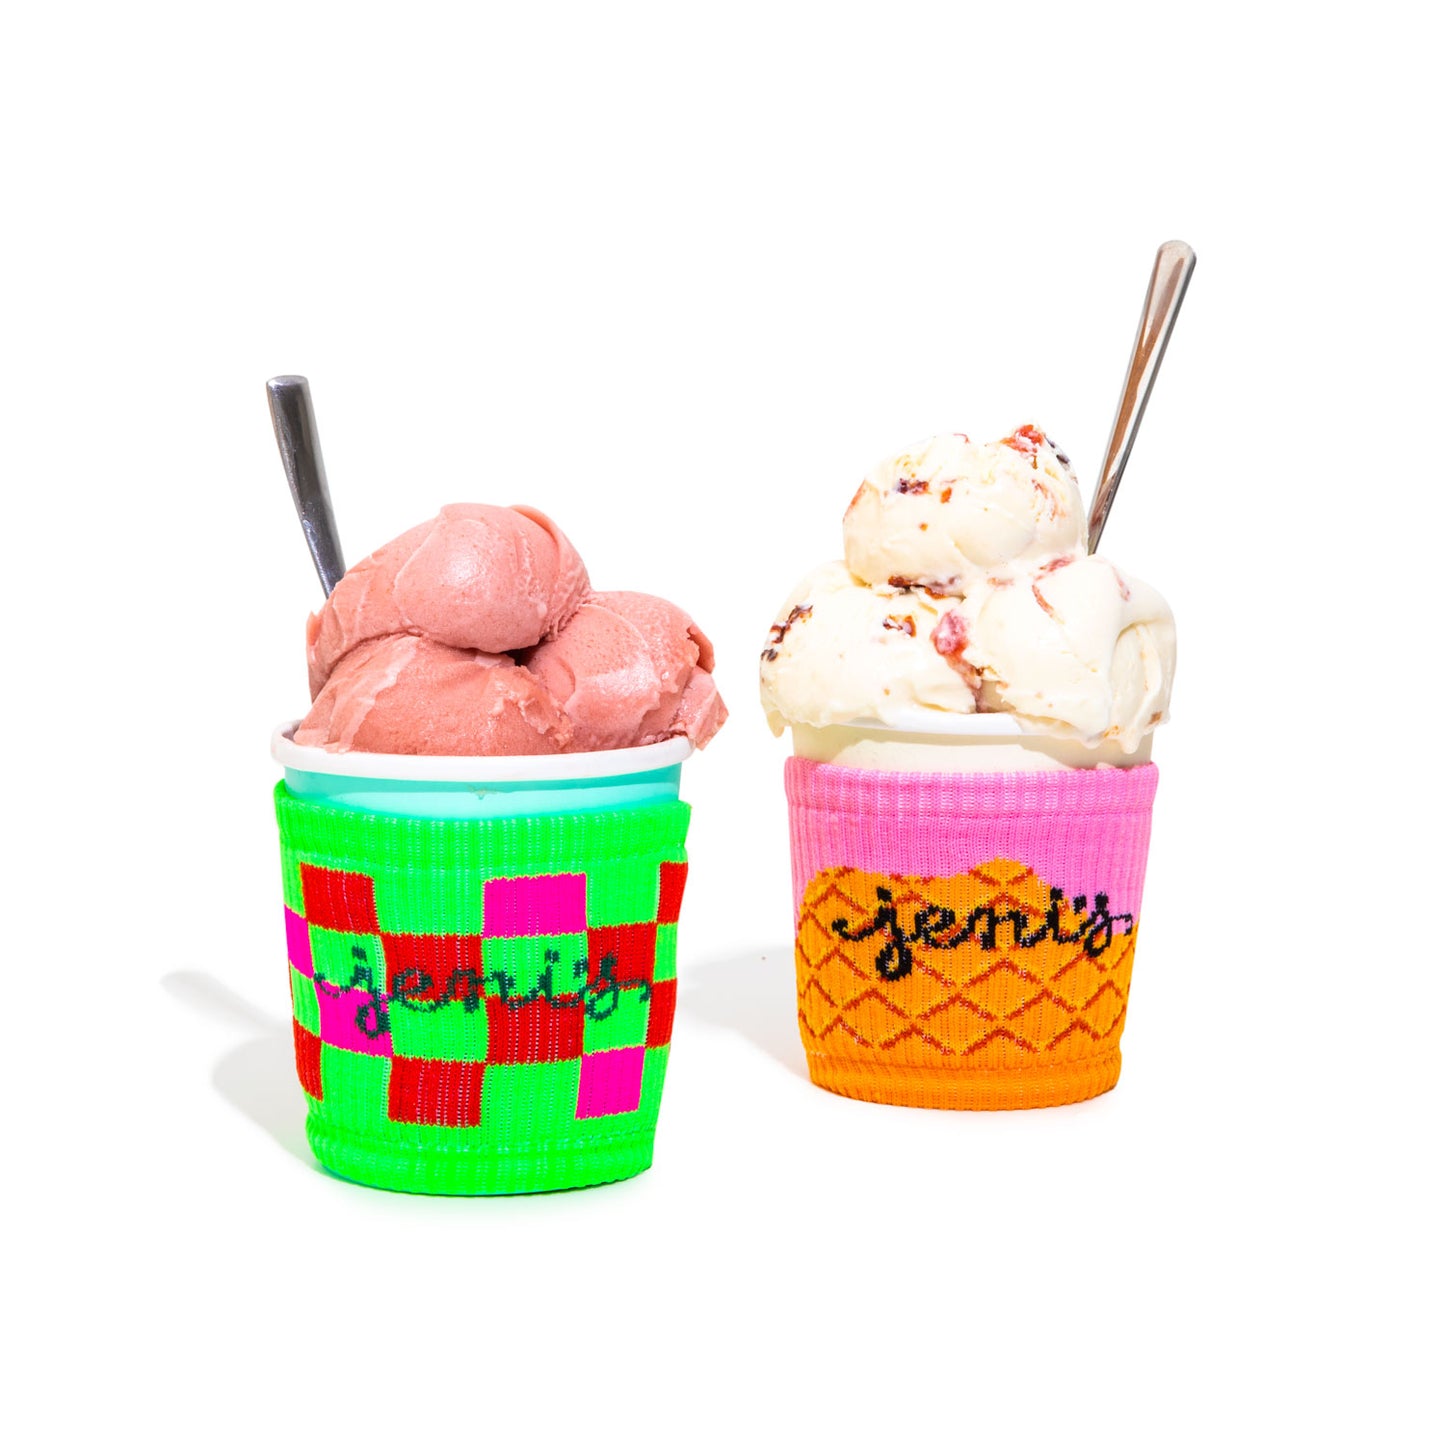 Jeni's Pint Koozies Merch Jeni's Splendid Ice Creams   